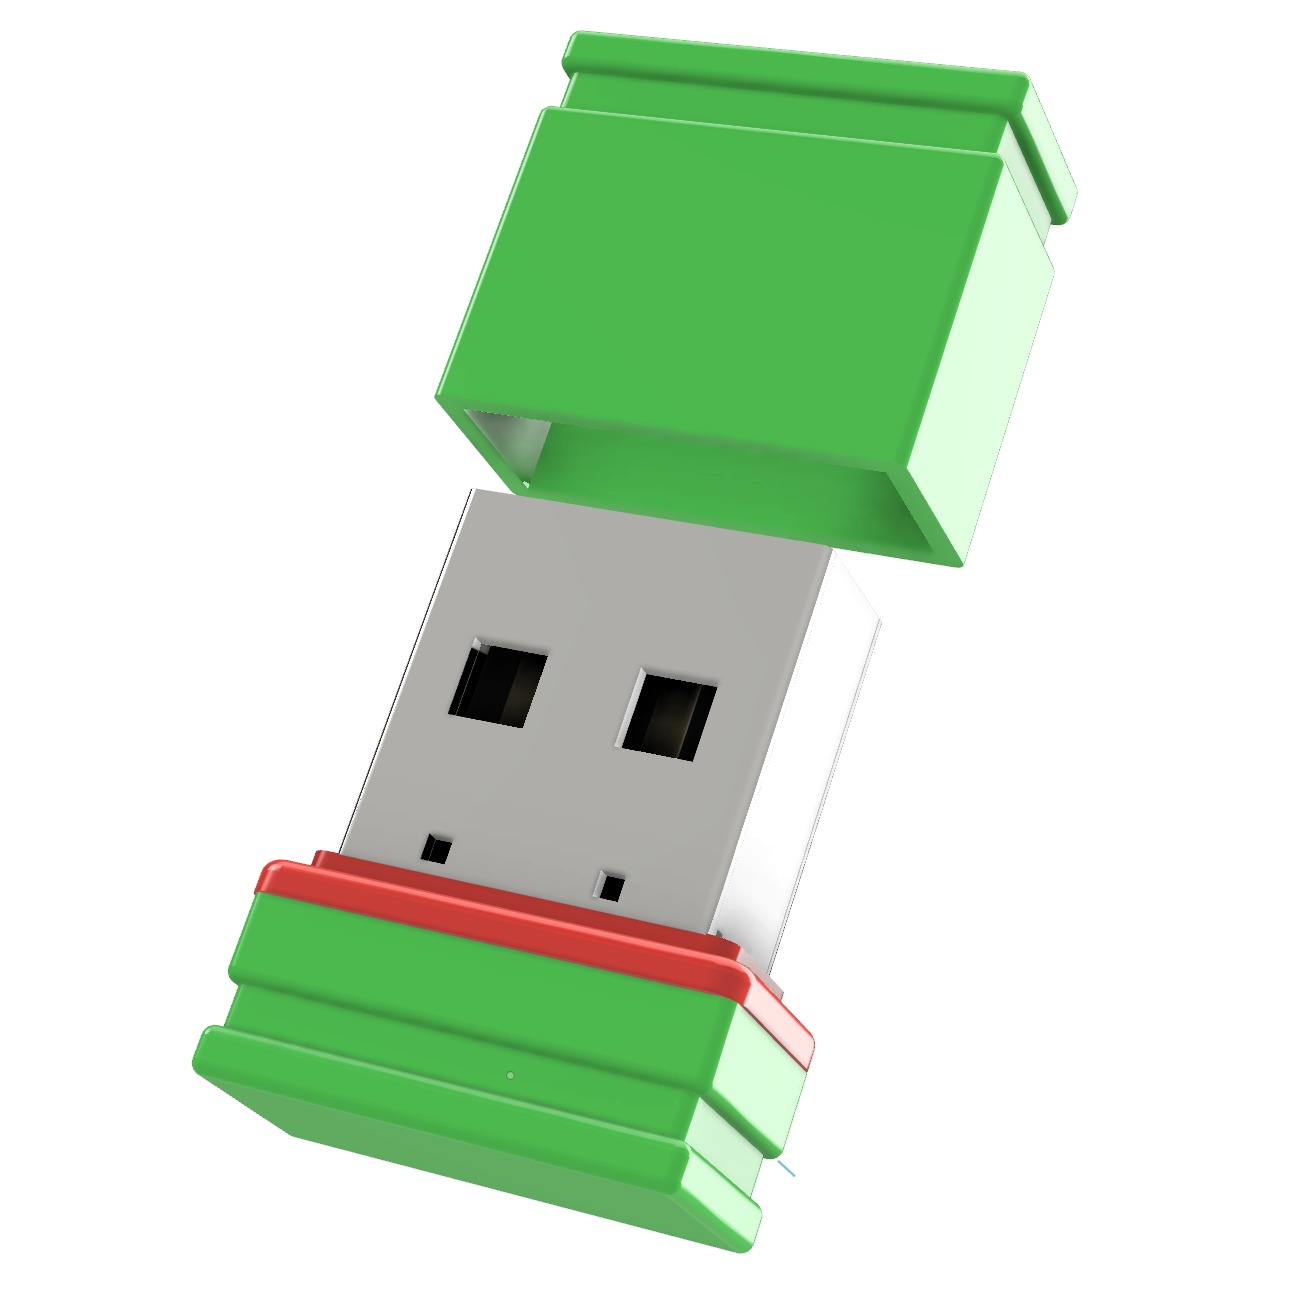 USB GERMANY ®ULTRA GB) 32 (Grün/Rot, P1 Mini USB-Stick